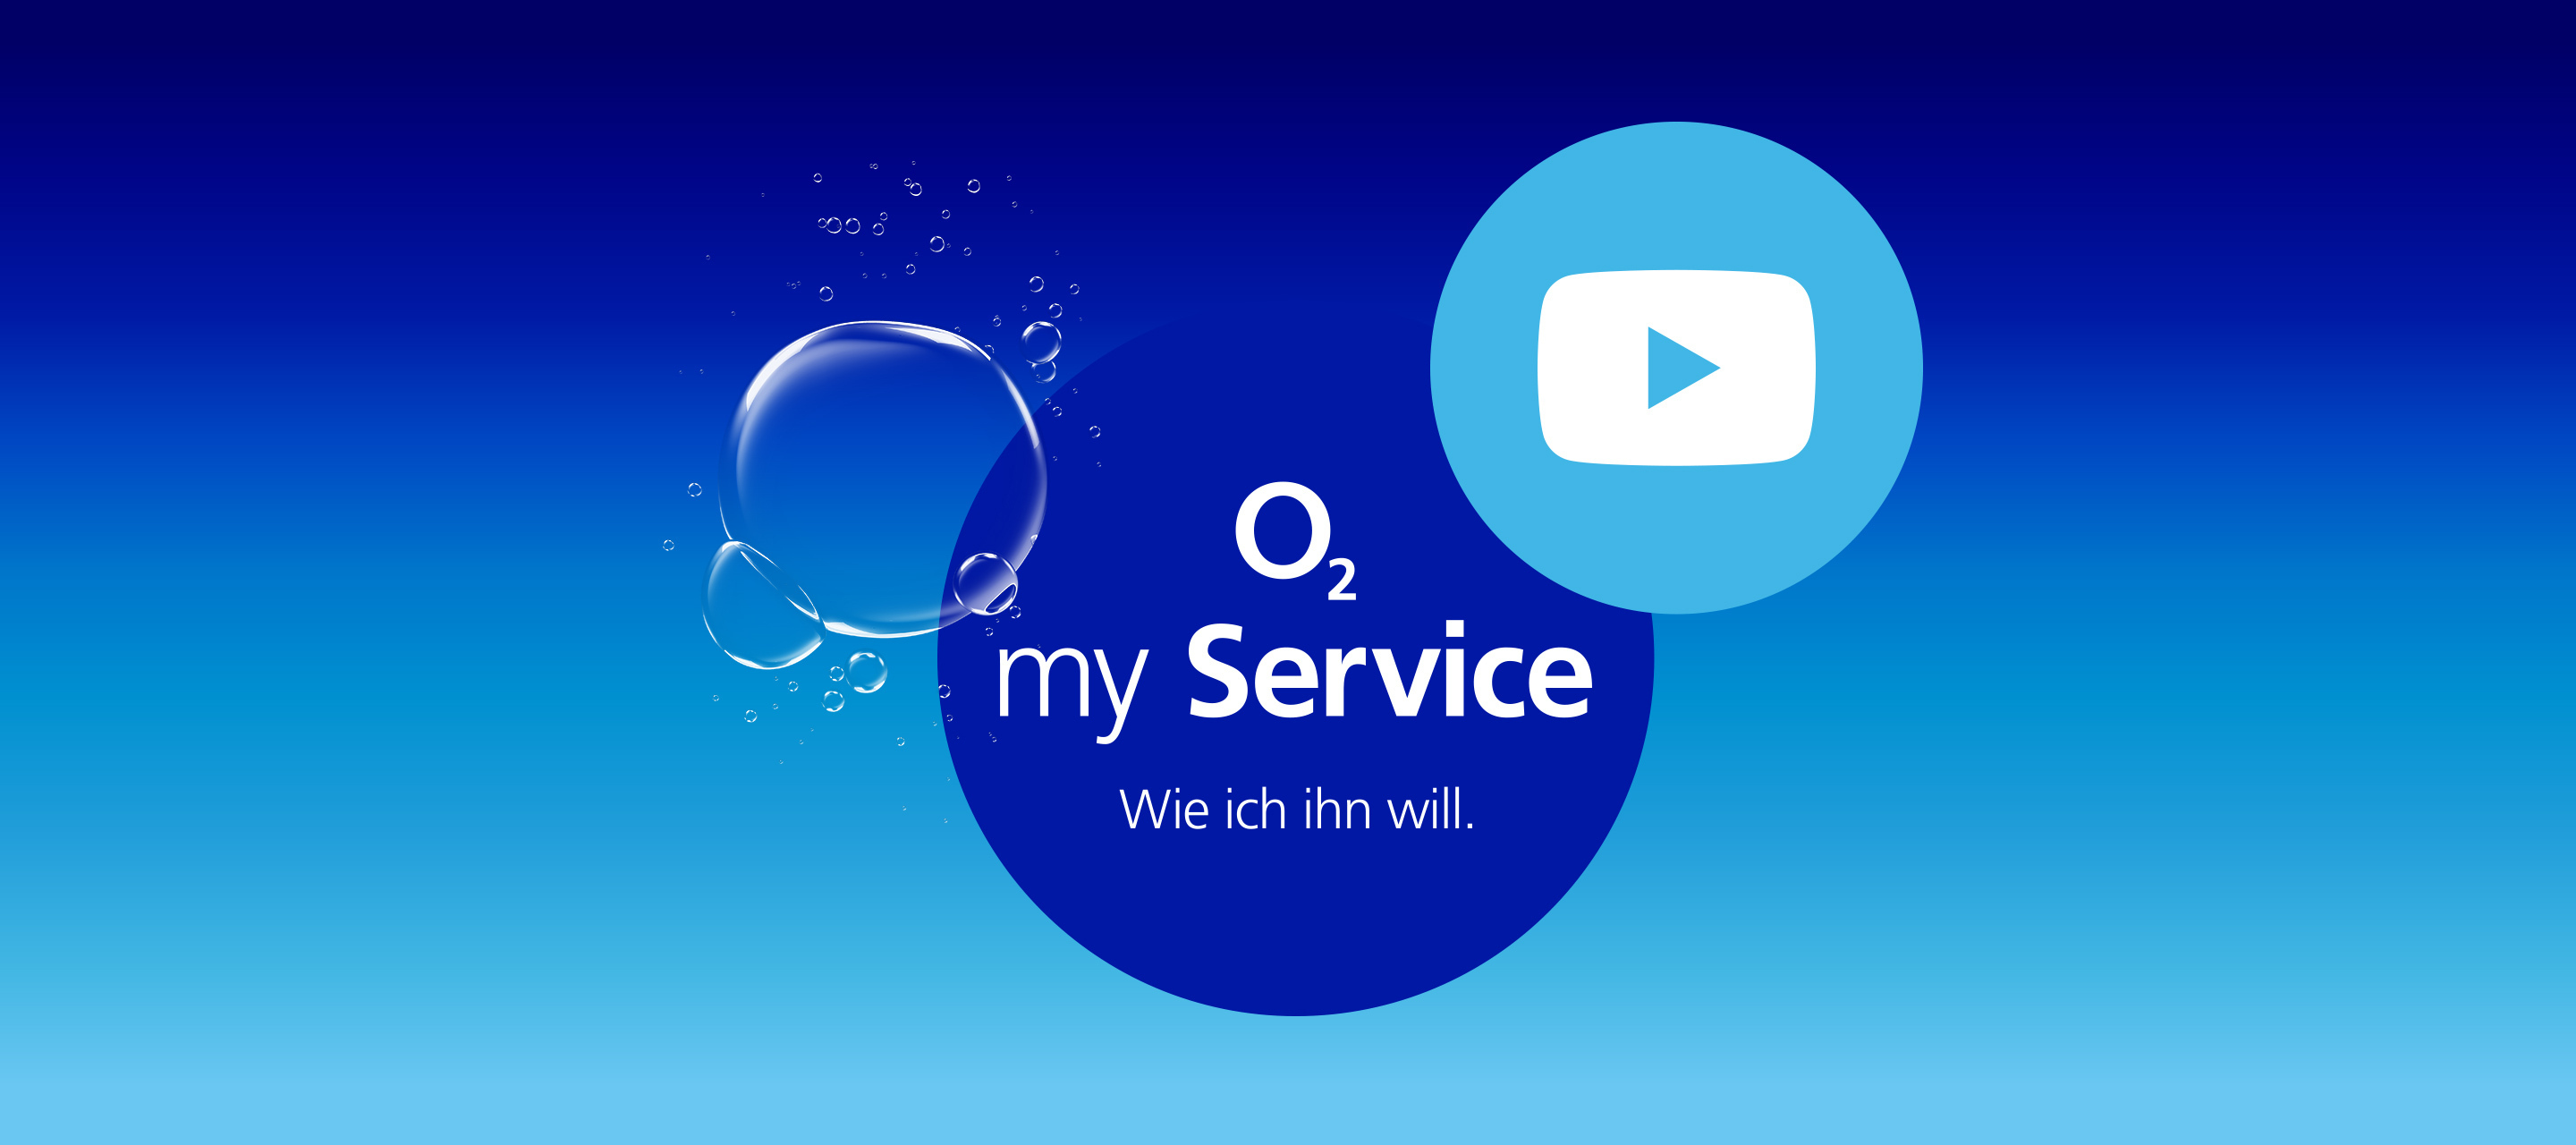 Der O₂ my Service YouTube Kanal - Hilfreiche Videos zu Mobilfunk, DSL und mehr